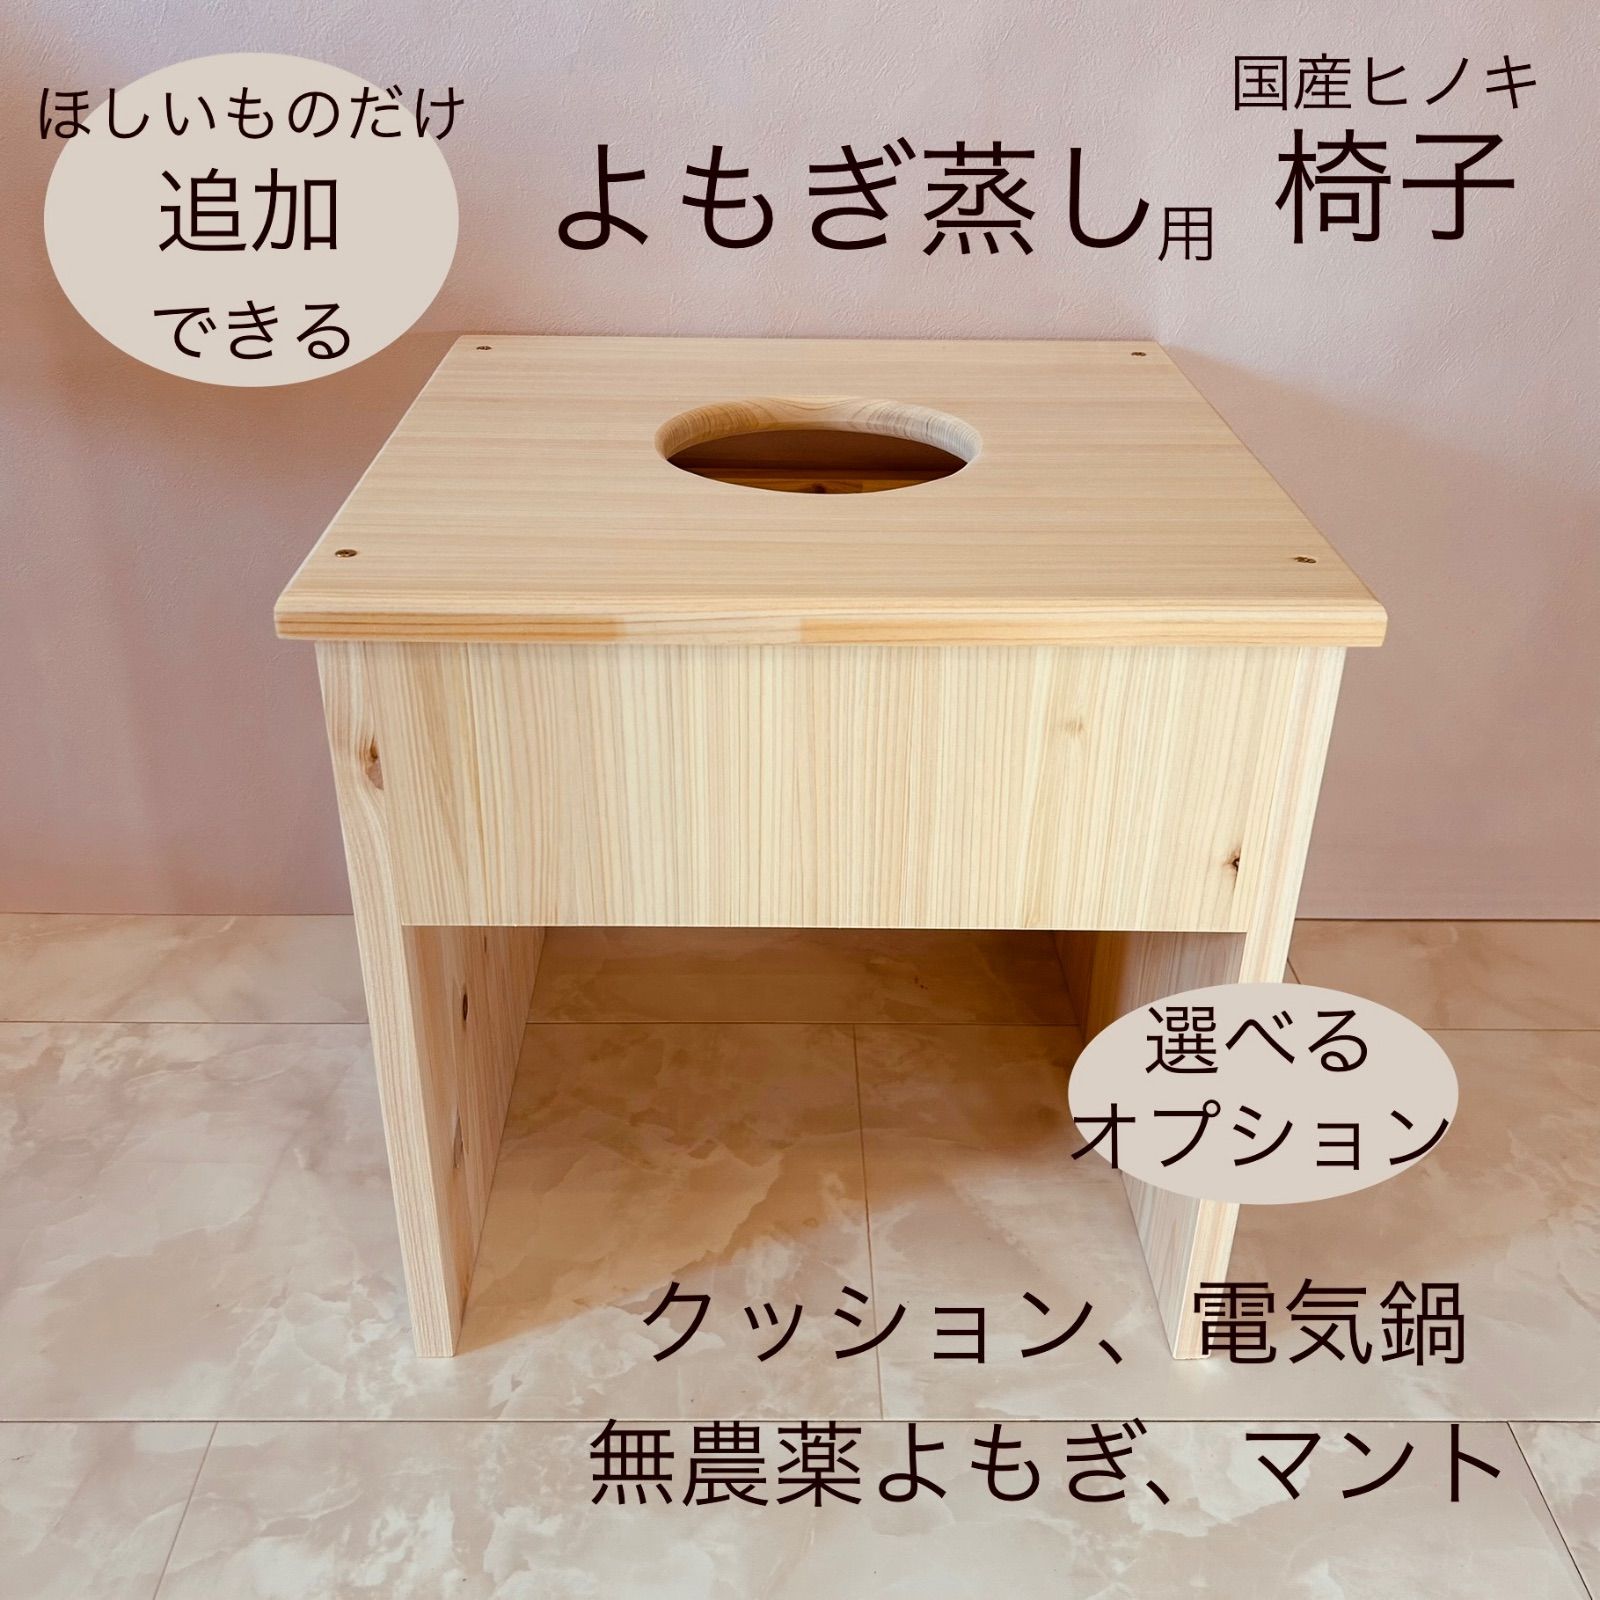 国産ヒノキ使用☆よもぎ蒸し用 椅子のみ - メルカリ